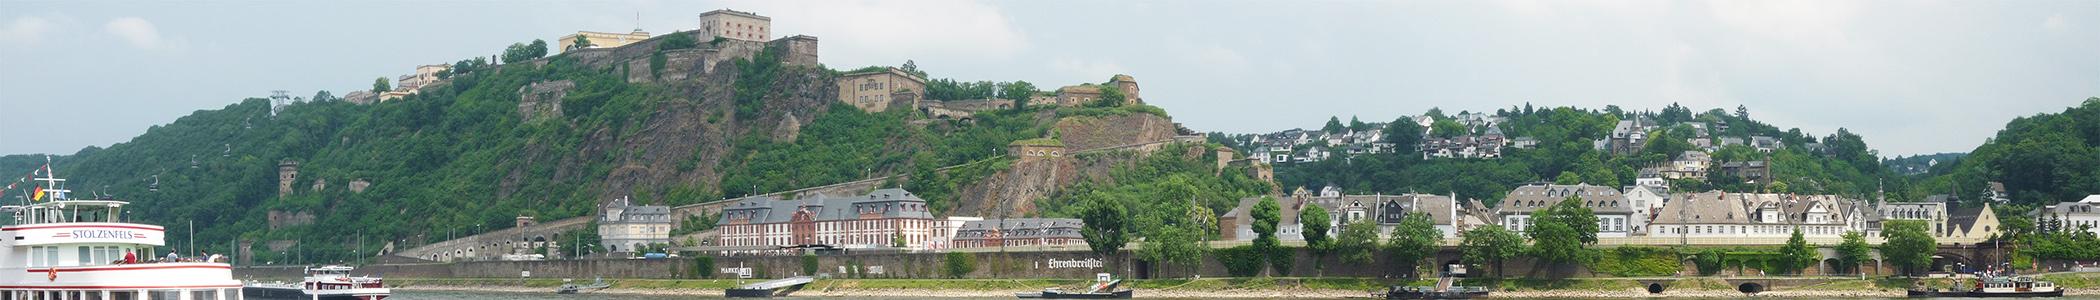 Banner image for Koblenz on GigsGuide